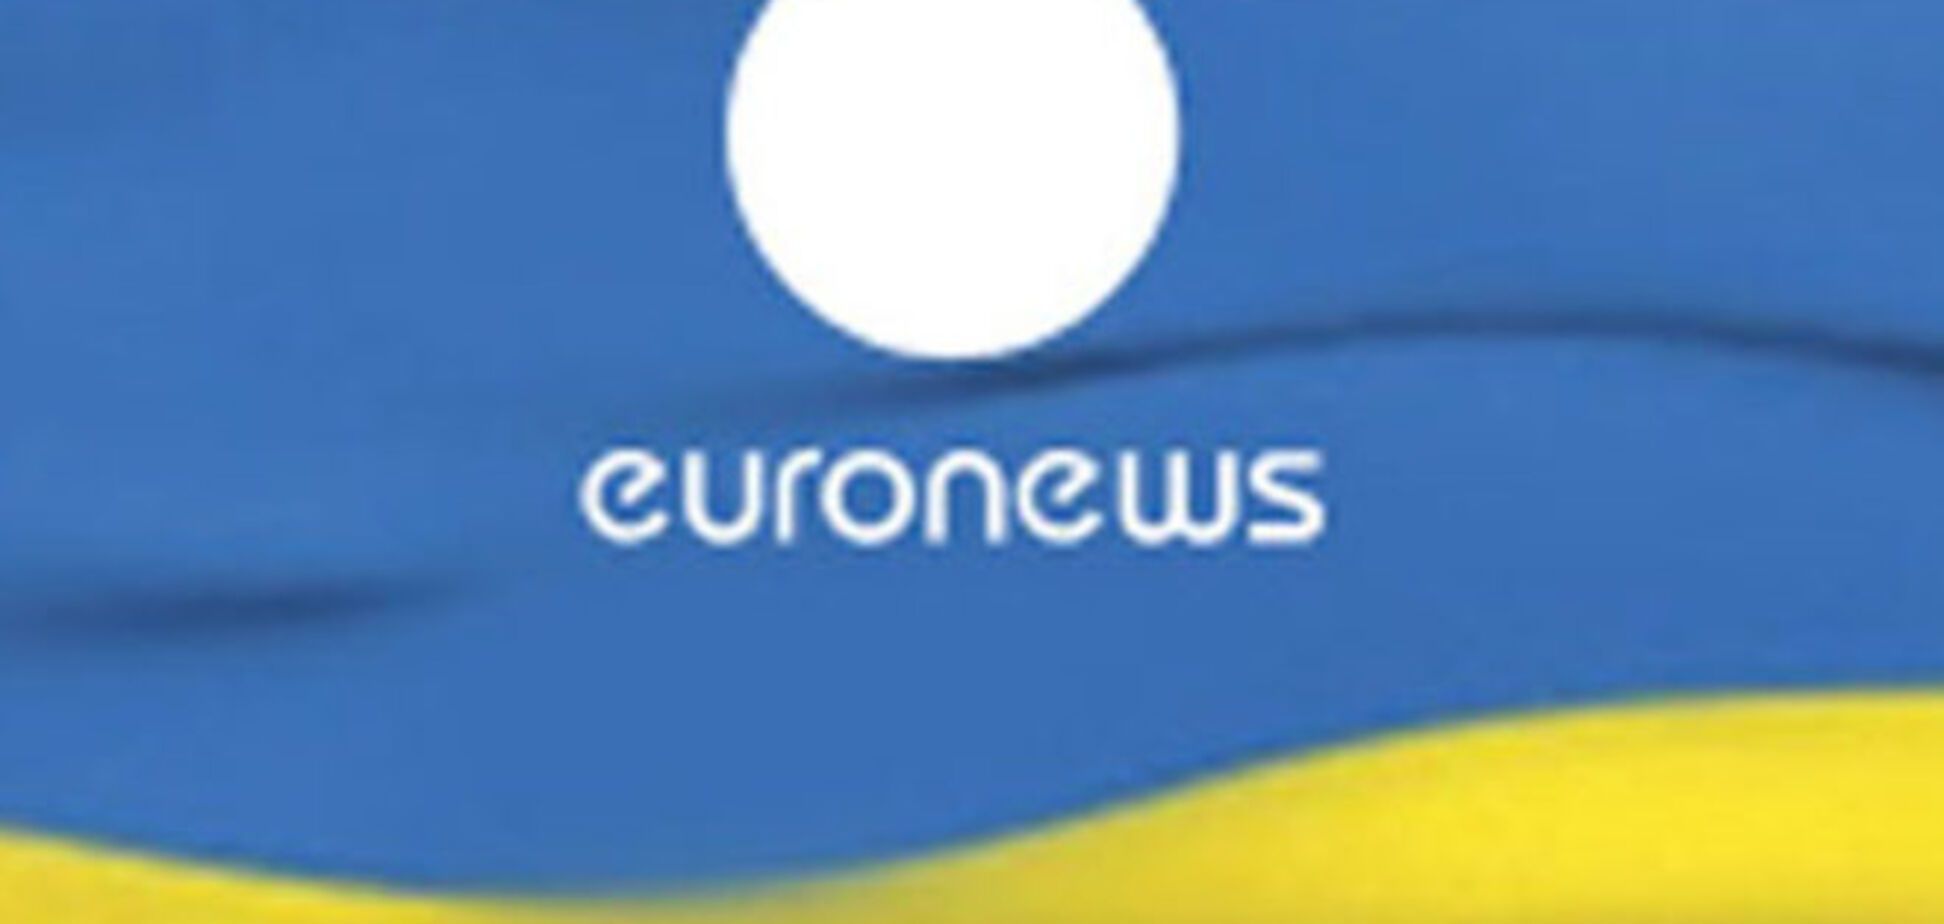 Українська версія міжнародного телеканалу Euronews може припинити мовлення